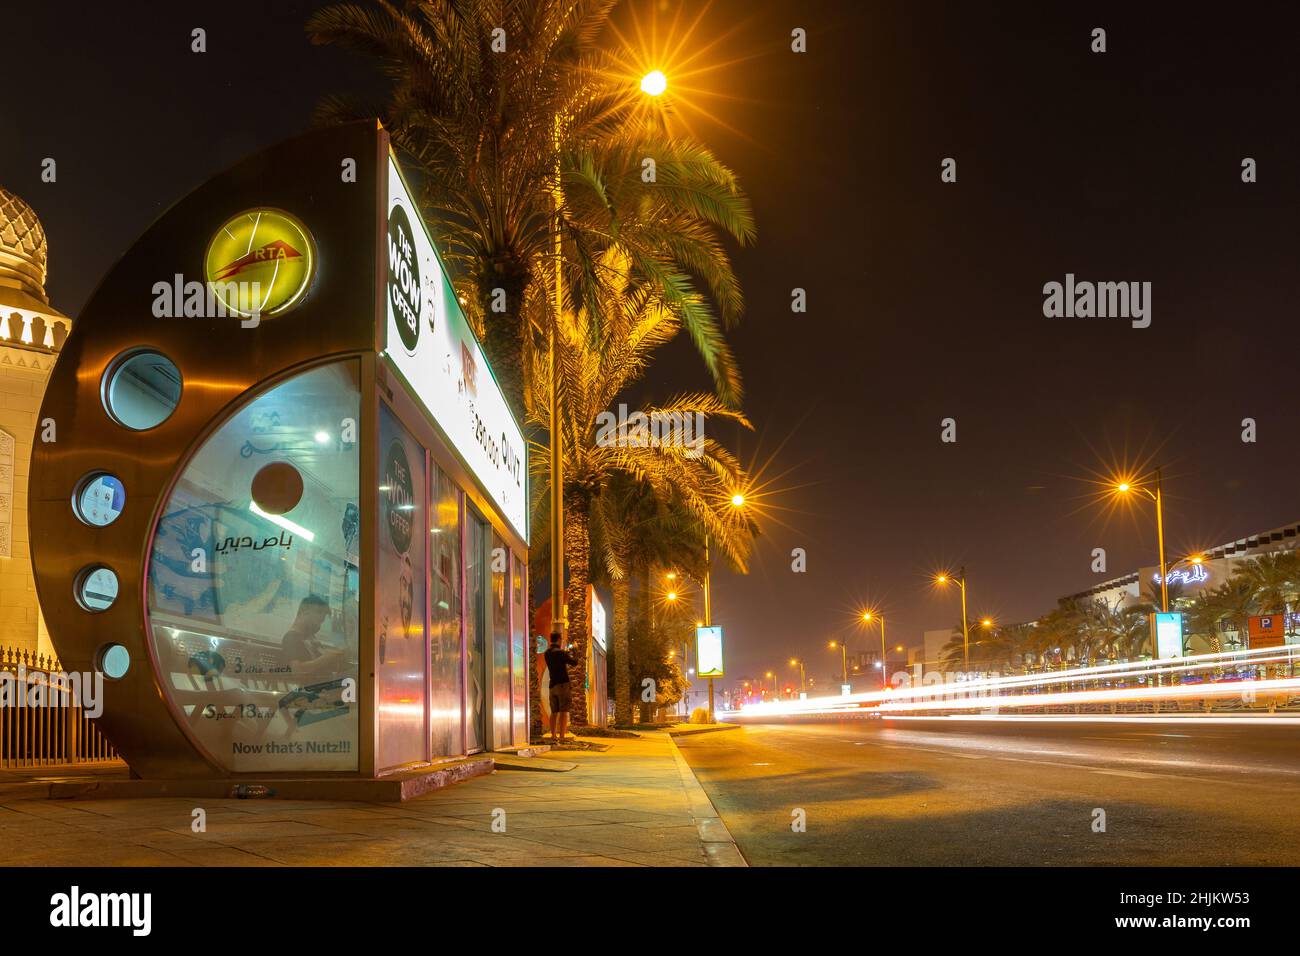 Dubai, VAE, 27.09.21. Klimatisierte RTA-Bushaltestelle in Dubai bei Nacht auf einer belebten Straße, mit Ampelstreifen und Palmen, Langzeitbelichtung Foto. Stockfoto